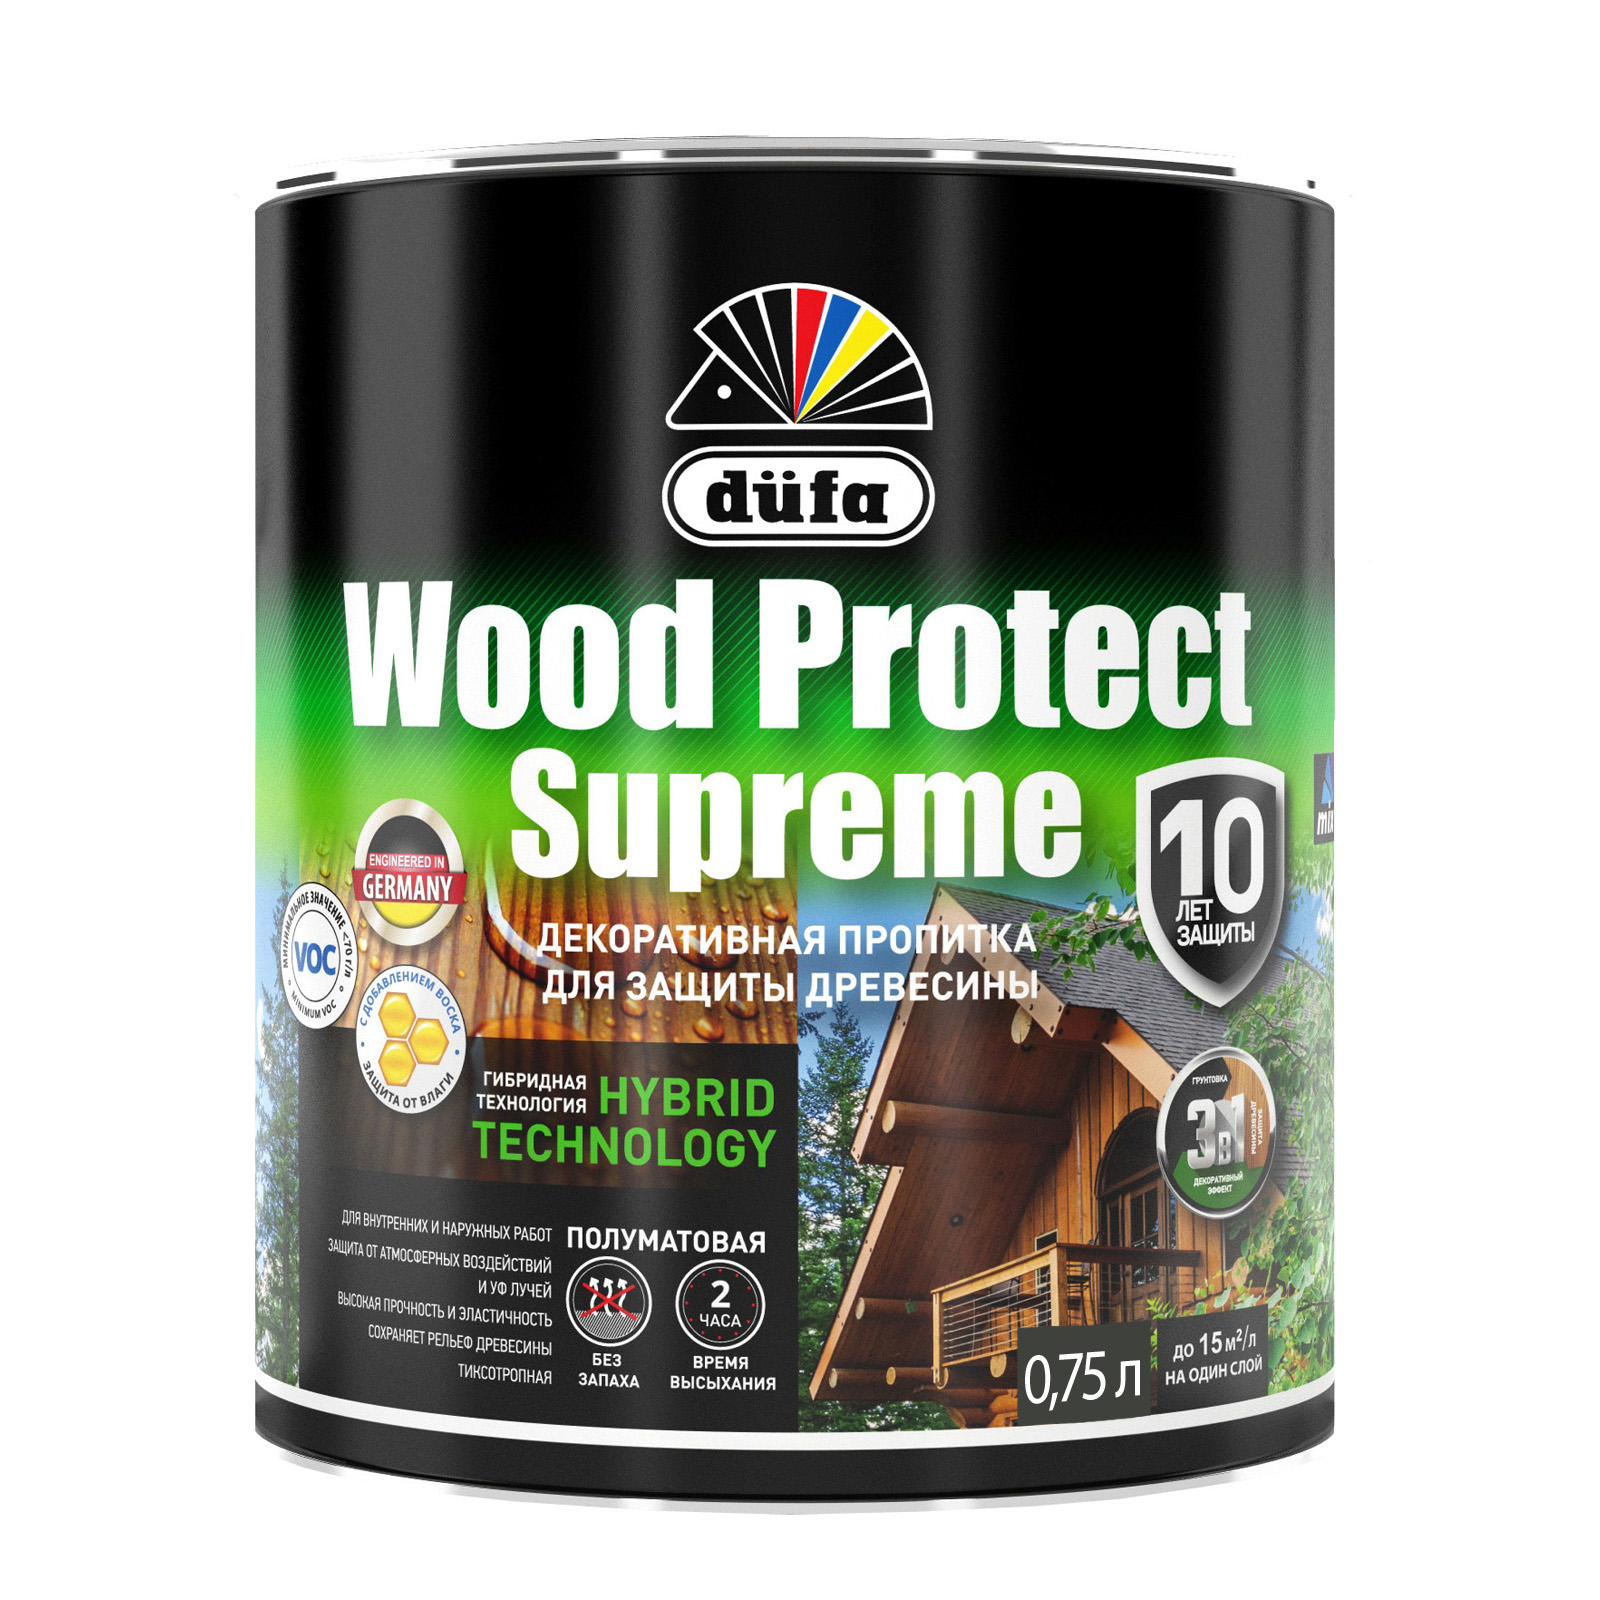 пропитка для дерева dufa wood tex венге 900 мл Пропитка для древесины Dufa Wood Protect Supreme бесцветная, 750 мл